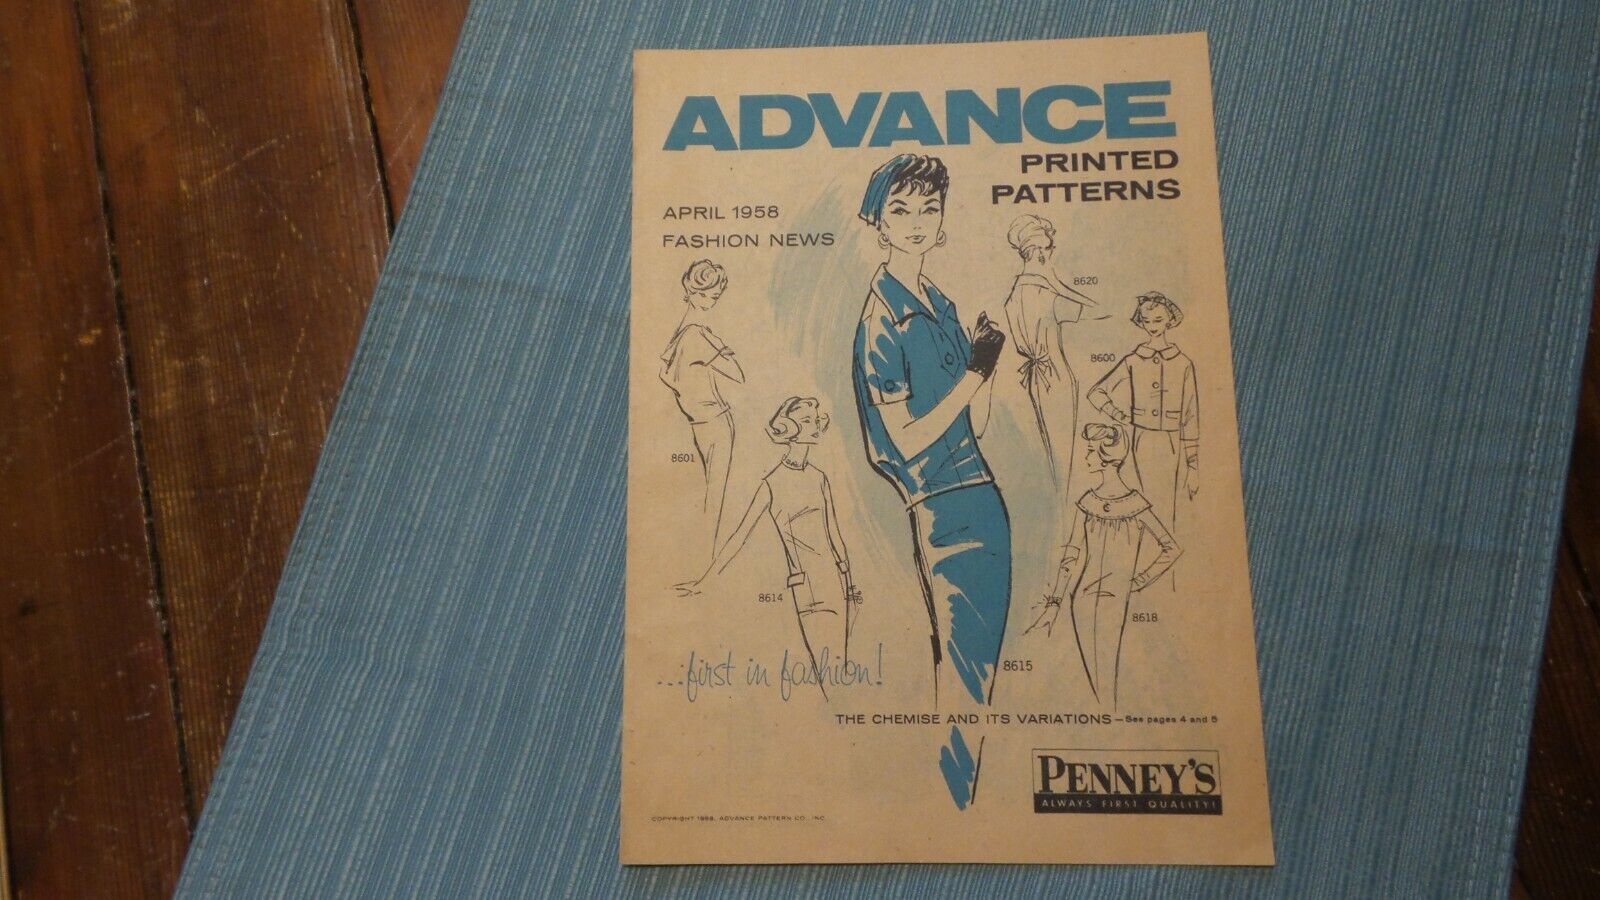 1958 ADVANCE April Fashion News BOOKLET Preview, Patterns, Design, Fashion